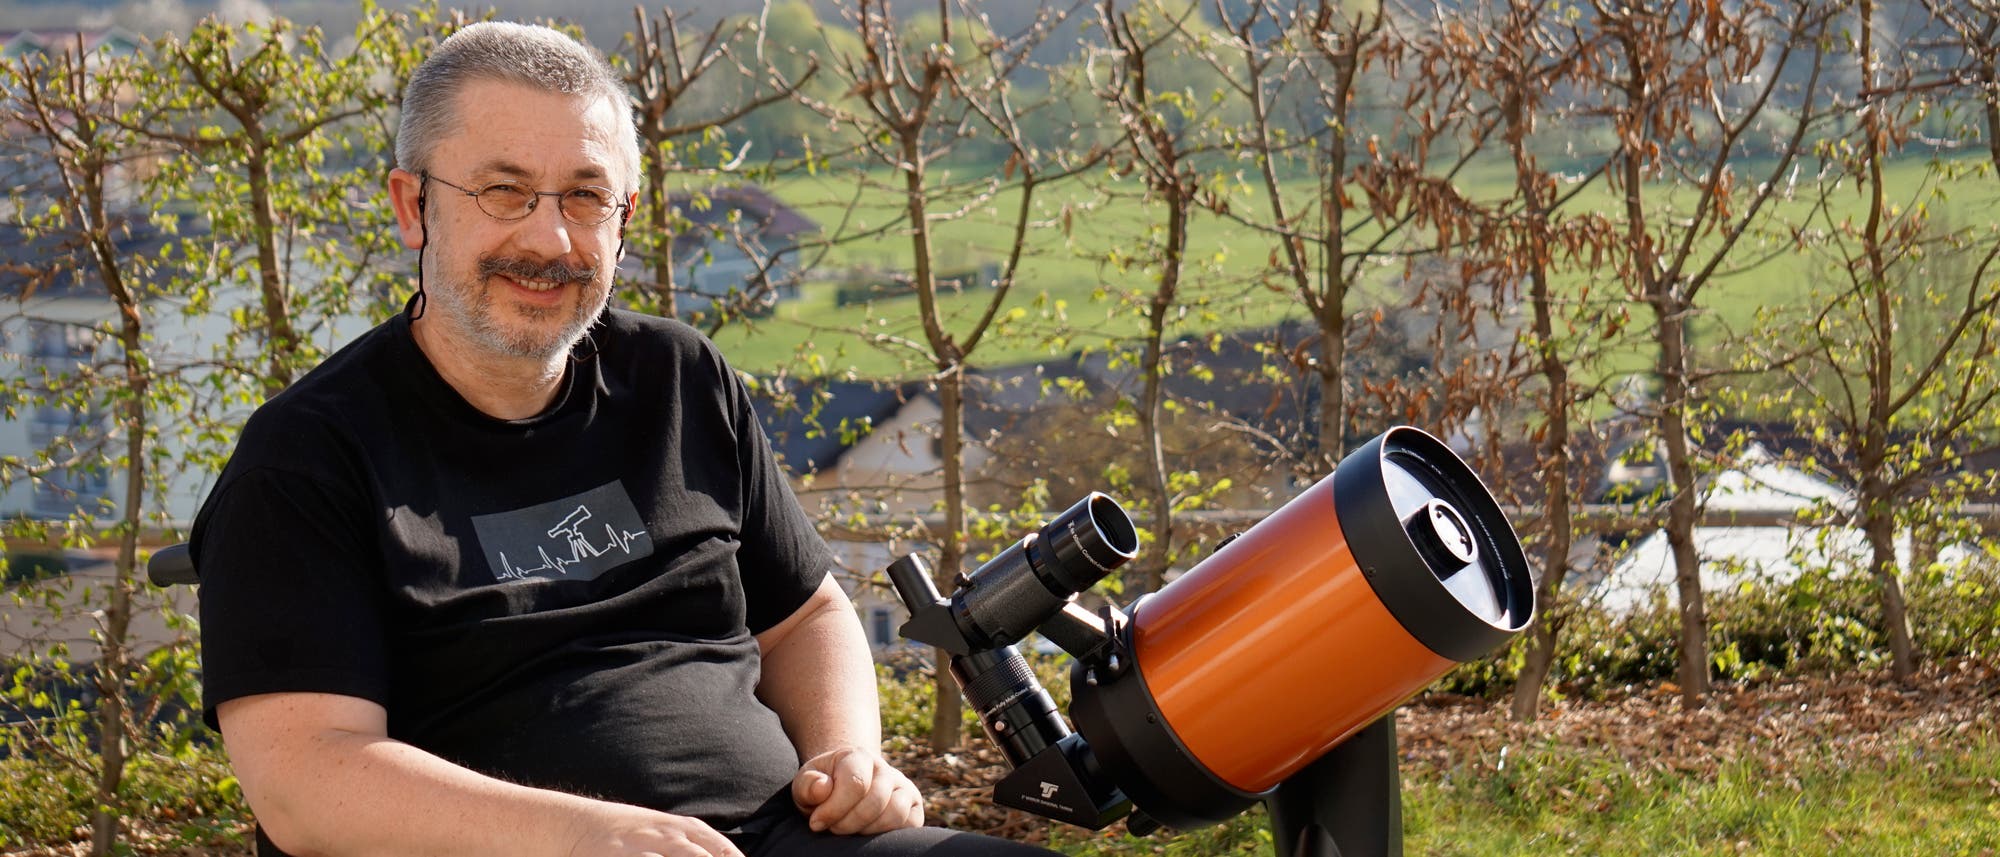 Manfred Fischer ist stolzer Besitzer und Nutzer des Teleskops Nexstar 6SE von Celestron, das er vom Rollstuhl aus selbstständig aufbauen und bedienen kann.